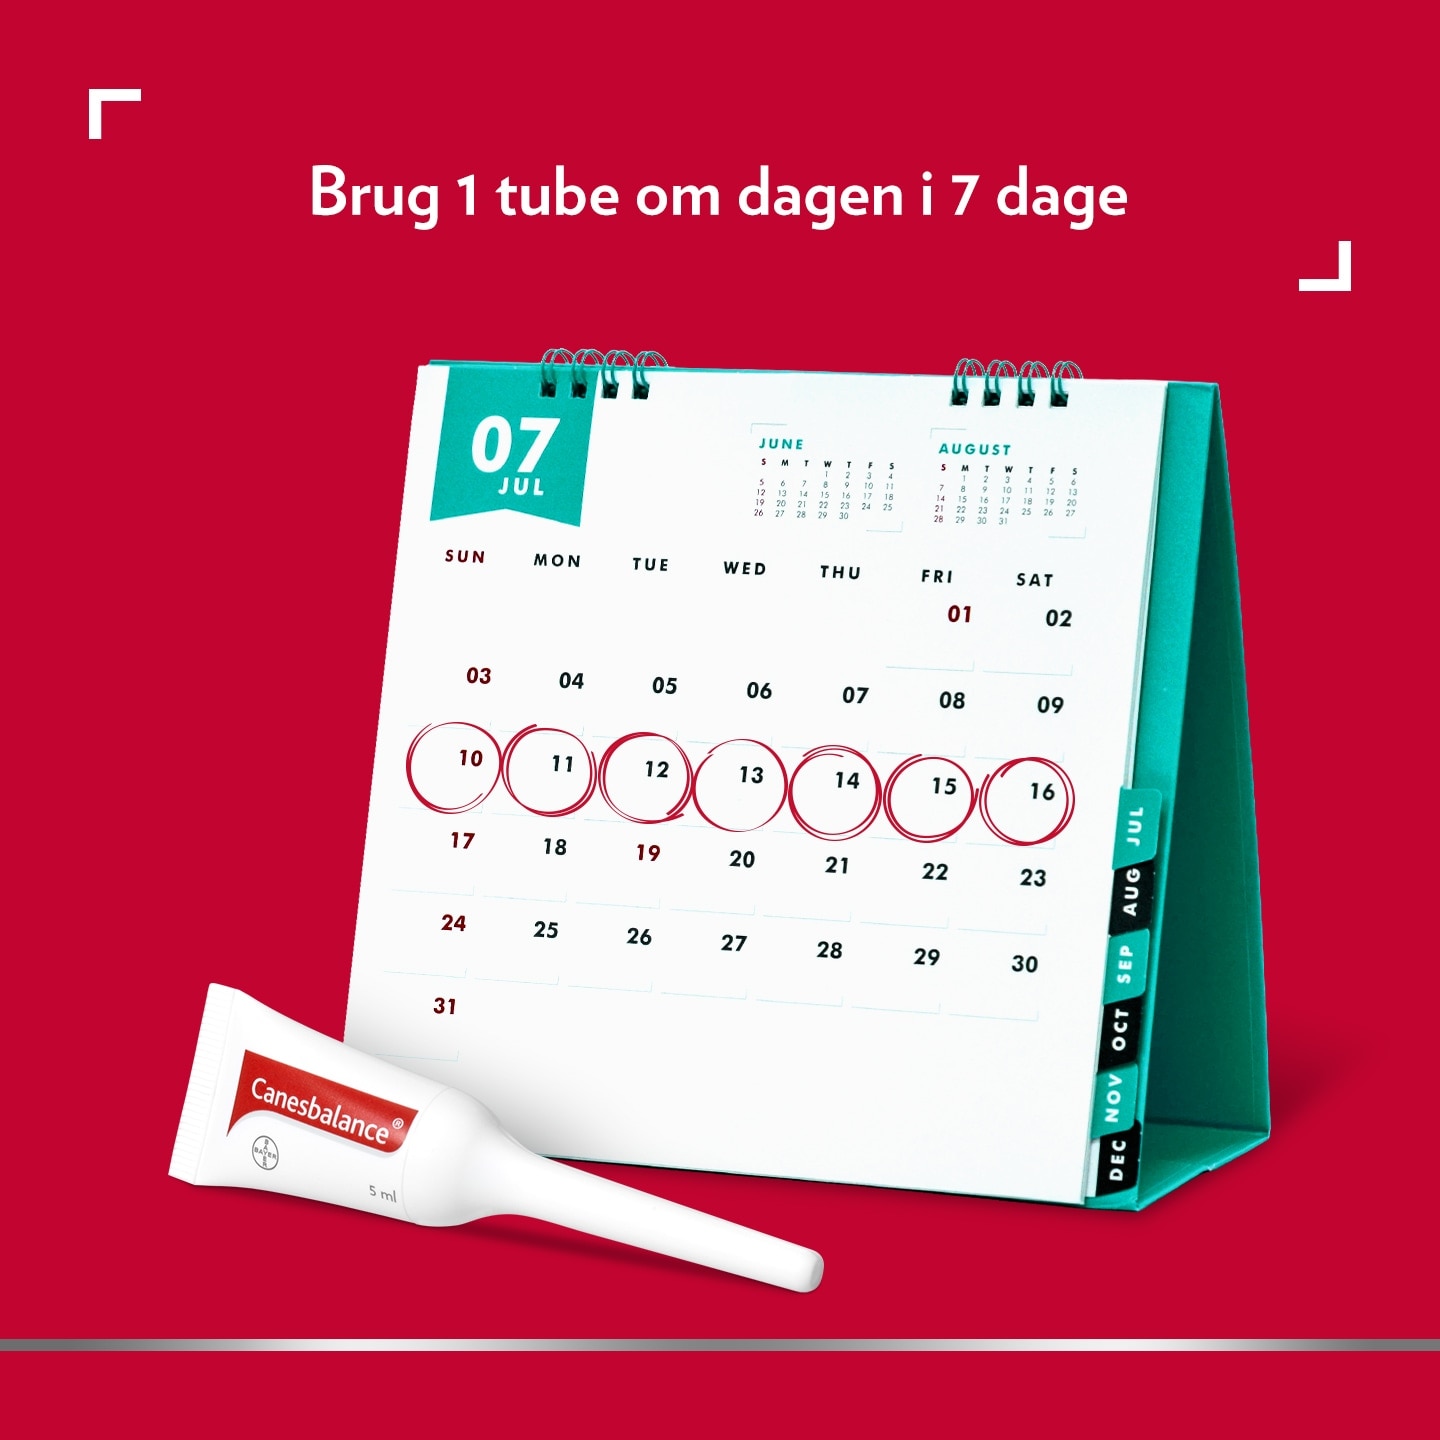 Billede af bordkalender og tube med Canesbalance® tube; billedtekst øverst: Brug 1 tube om dagen i 7 dage